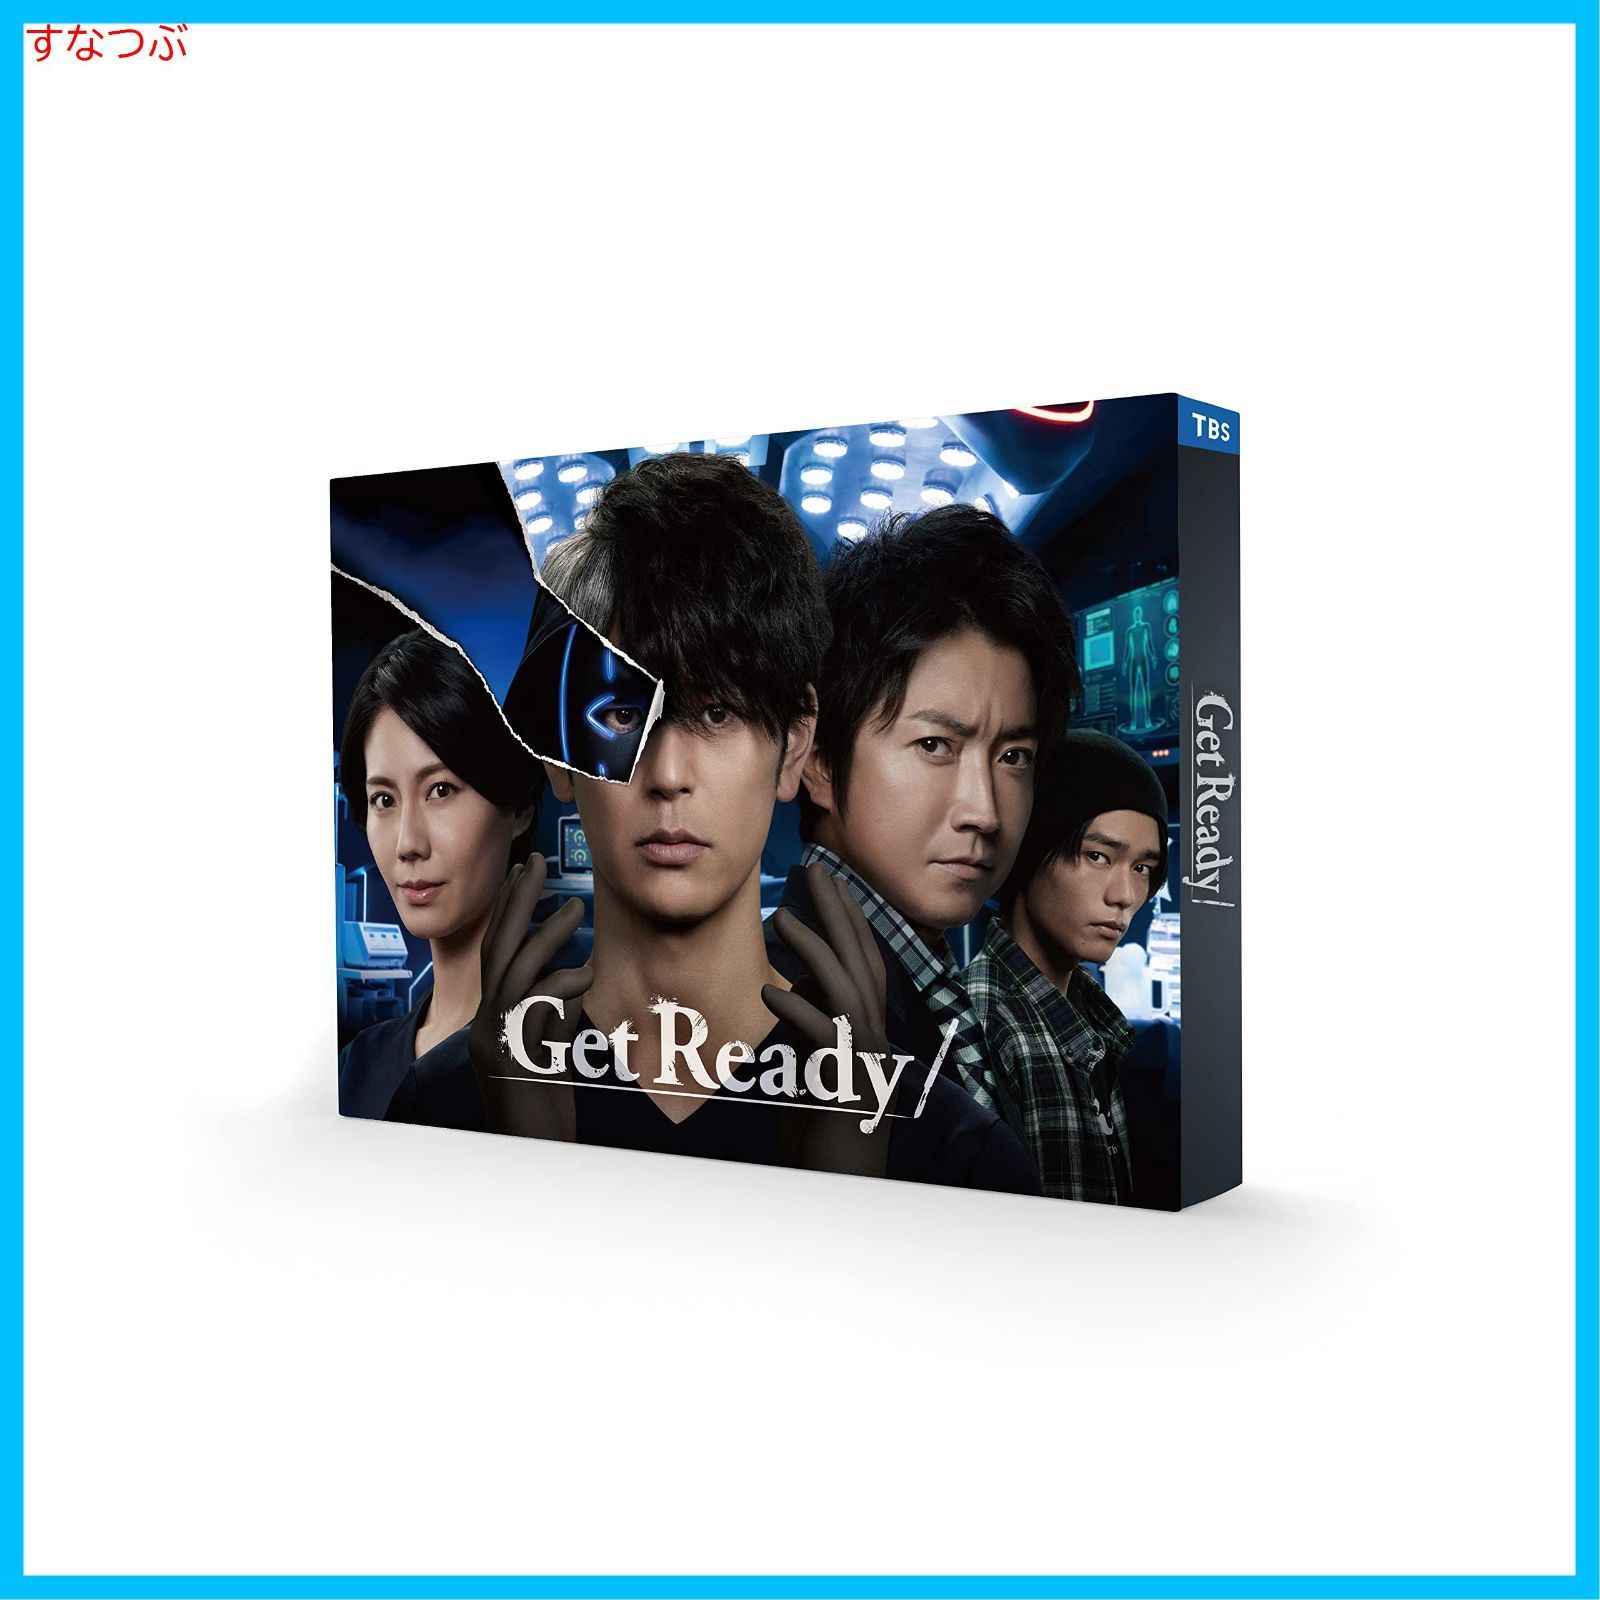 新品未開封】Get Ready! Blu-ray BOX [Blu-ray] 妻夫木聡 (出演) 松下奈緒 (出演) 形式: Blu-ray -  メルカリ